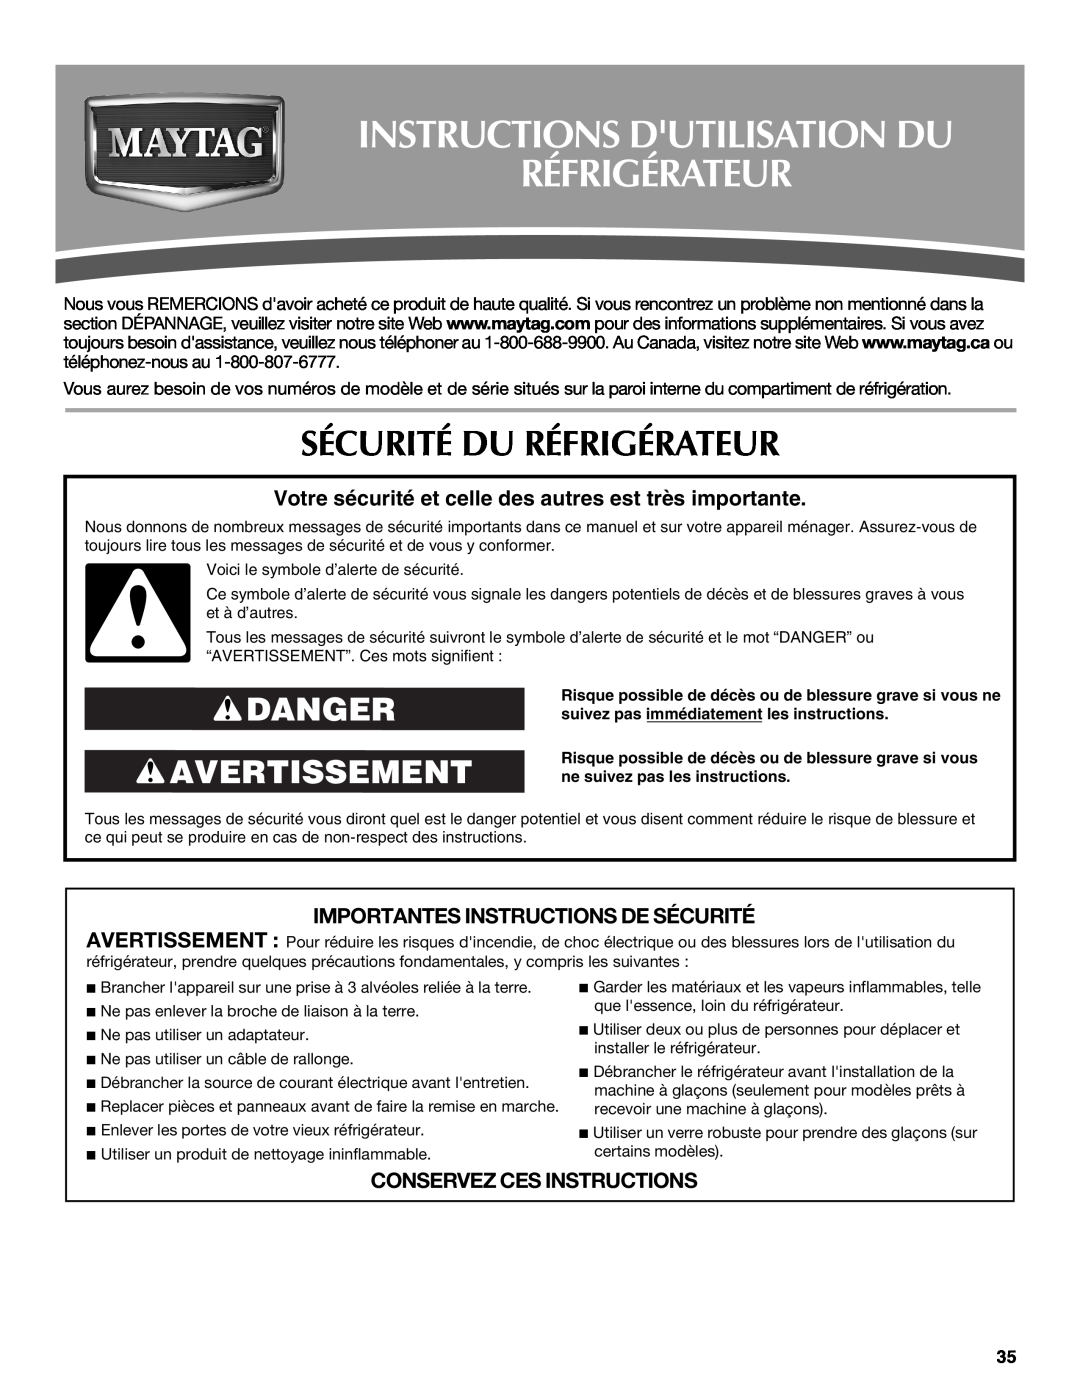 Maytag W10214489A, W10214488A Instructions Dutilisation Du Réfrigérateur, Sécurité Du Réfrigérateur, Danger Avertissement 